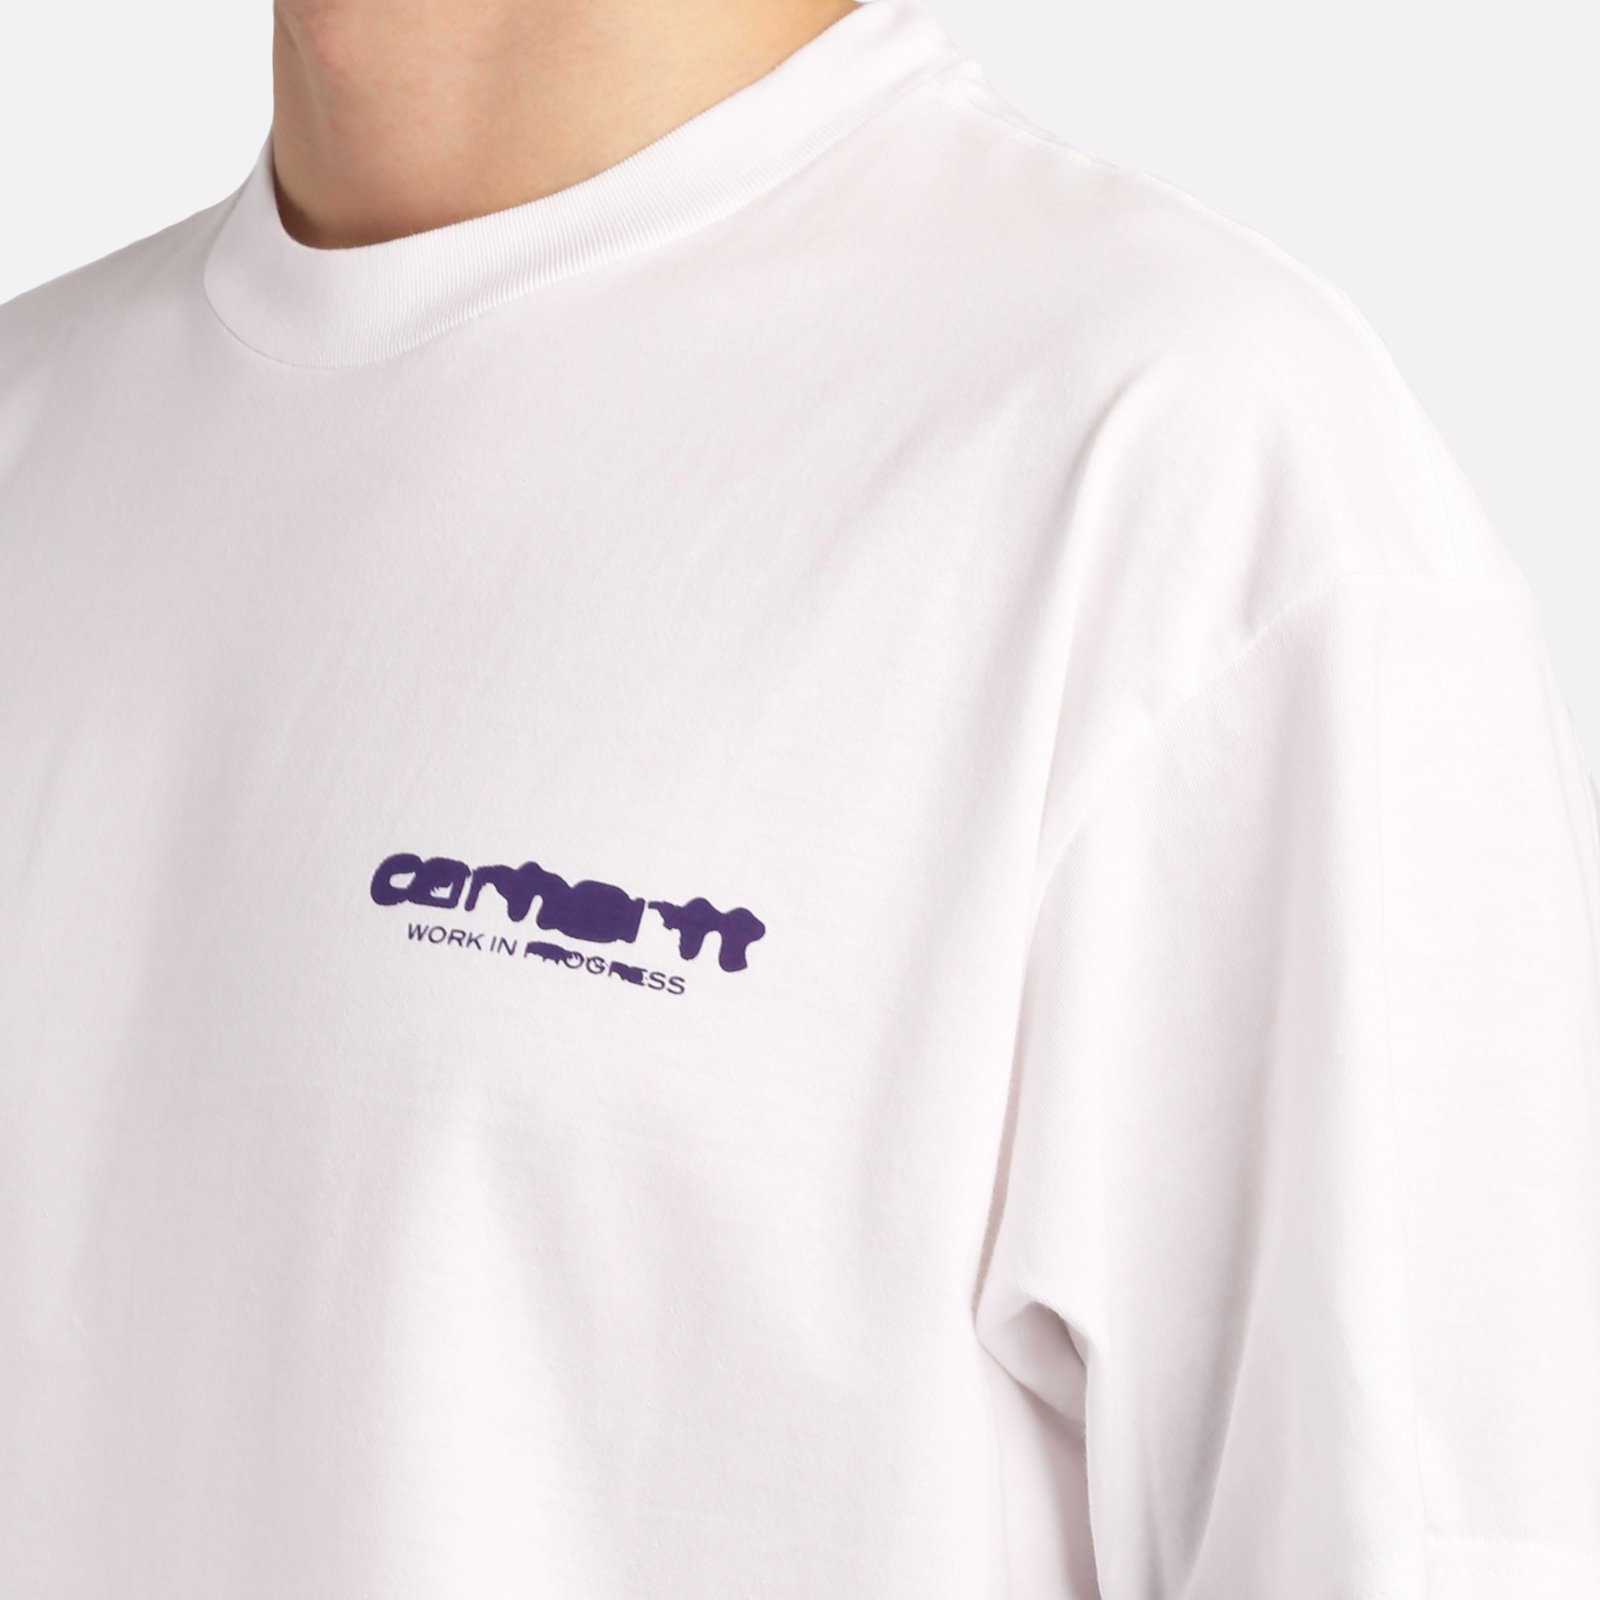 мужская белая футболка Carhartt WIP S/S Ink Bleed T-Shirt I032878-white/tyrian - цена, описание, фото 4